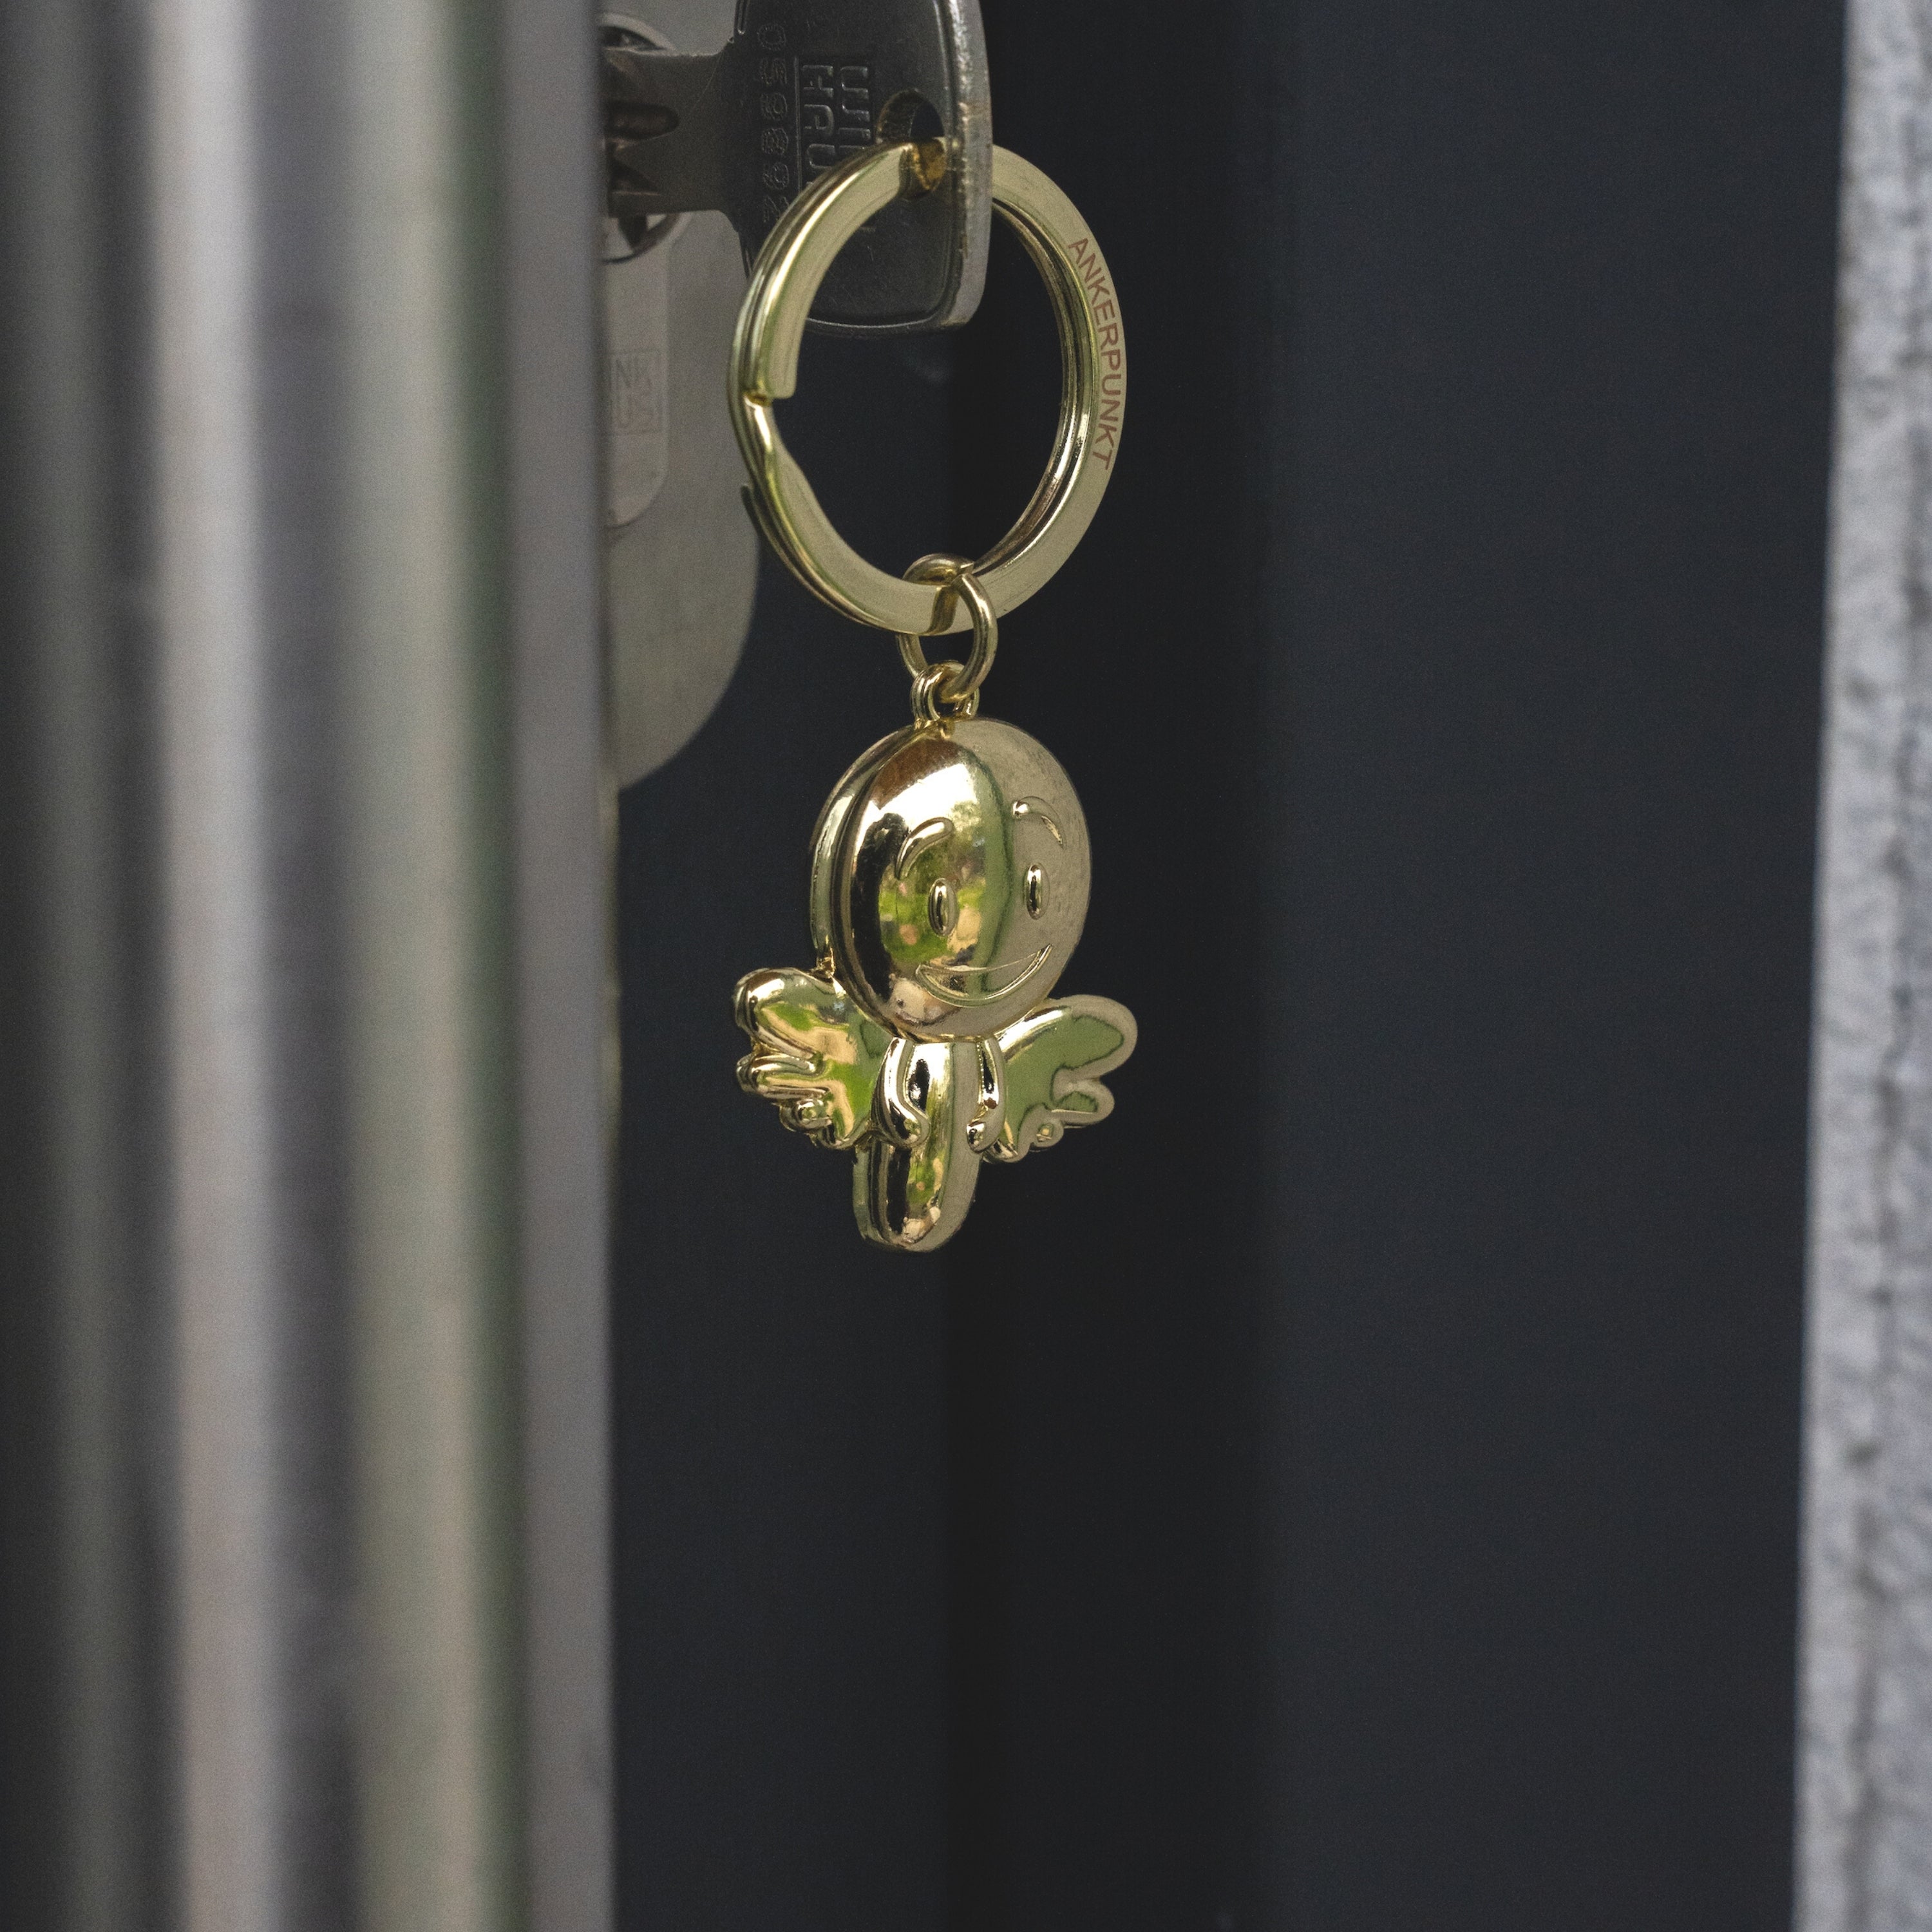 Schlüsselanhänger Engel Smiley gold glänzend im Türschloss hängend